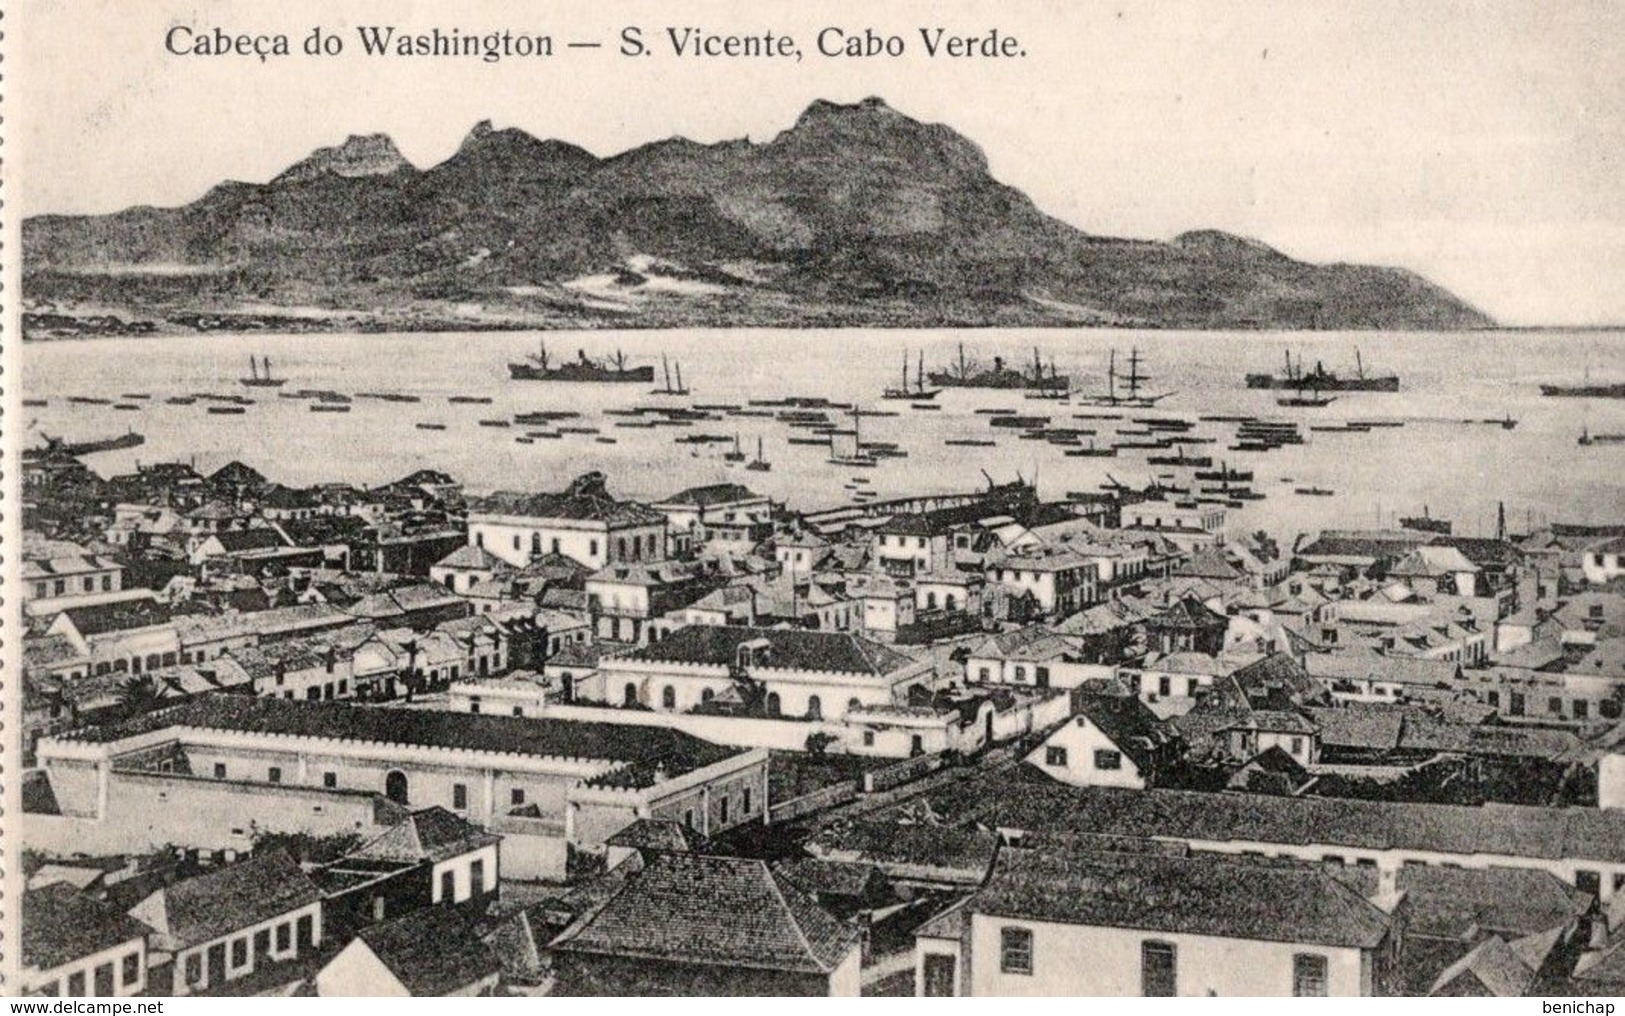 CPA CAP VERT - CABECA DO WASHINGTON - S. VICENTE - CABO VERDE - NEUVE - NON CIRCULEE - Cap Vert